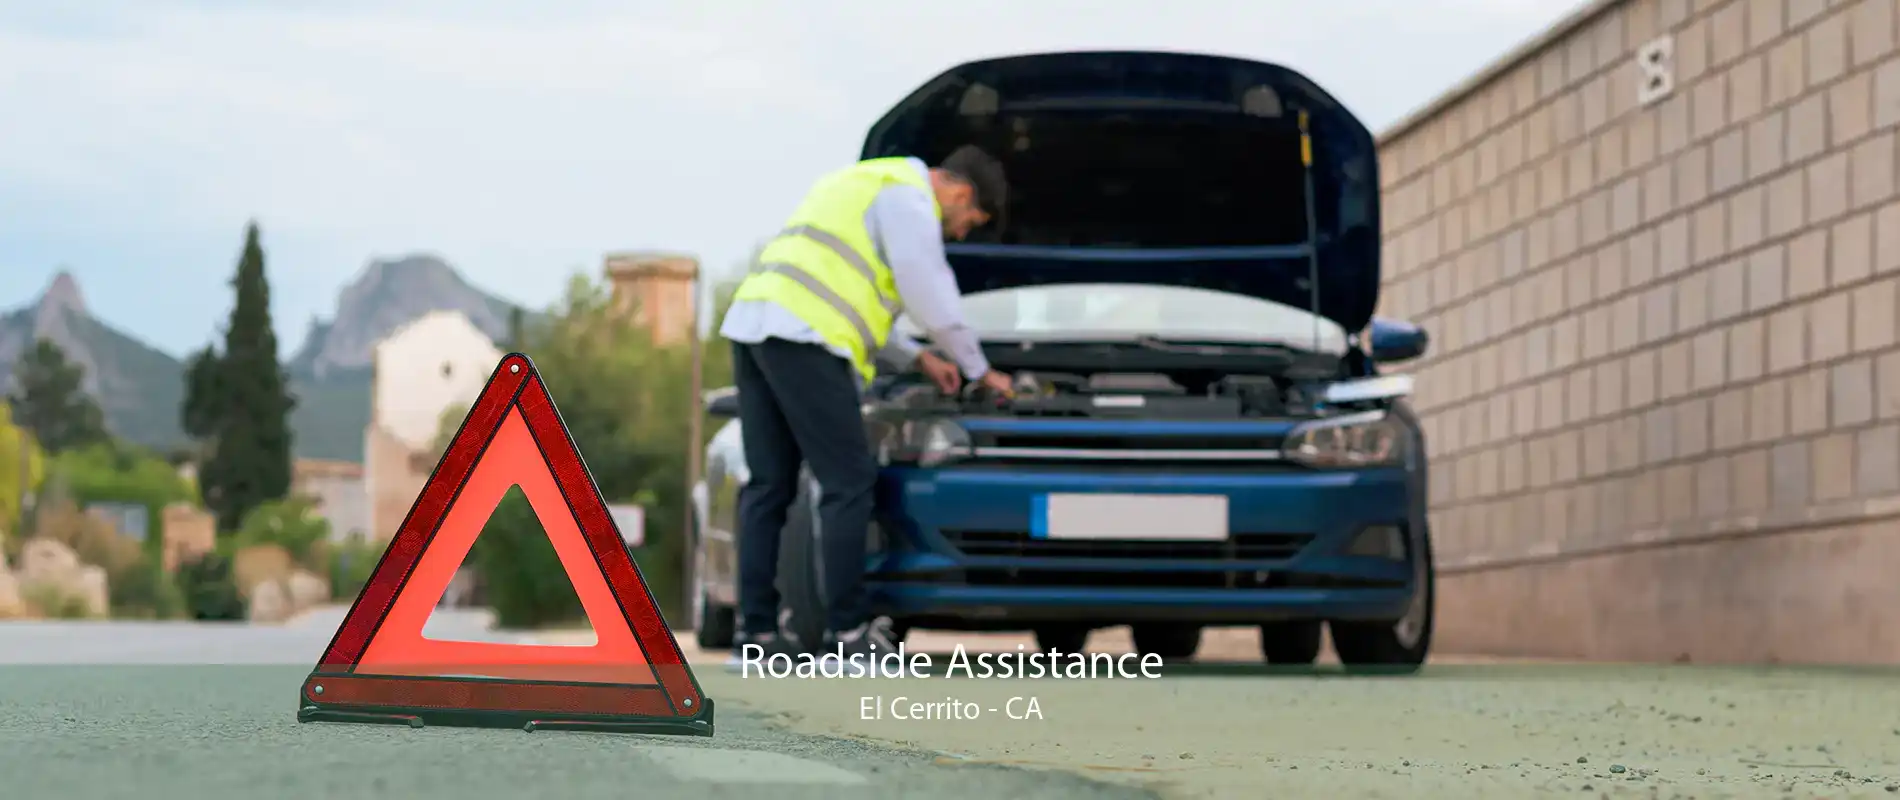 Roadside Assistance El Cerrito - CA